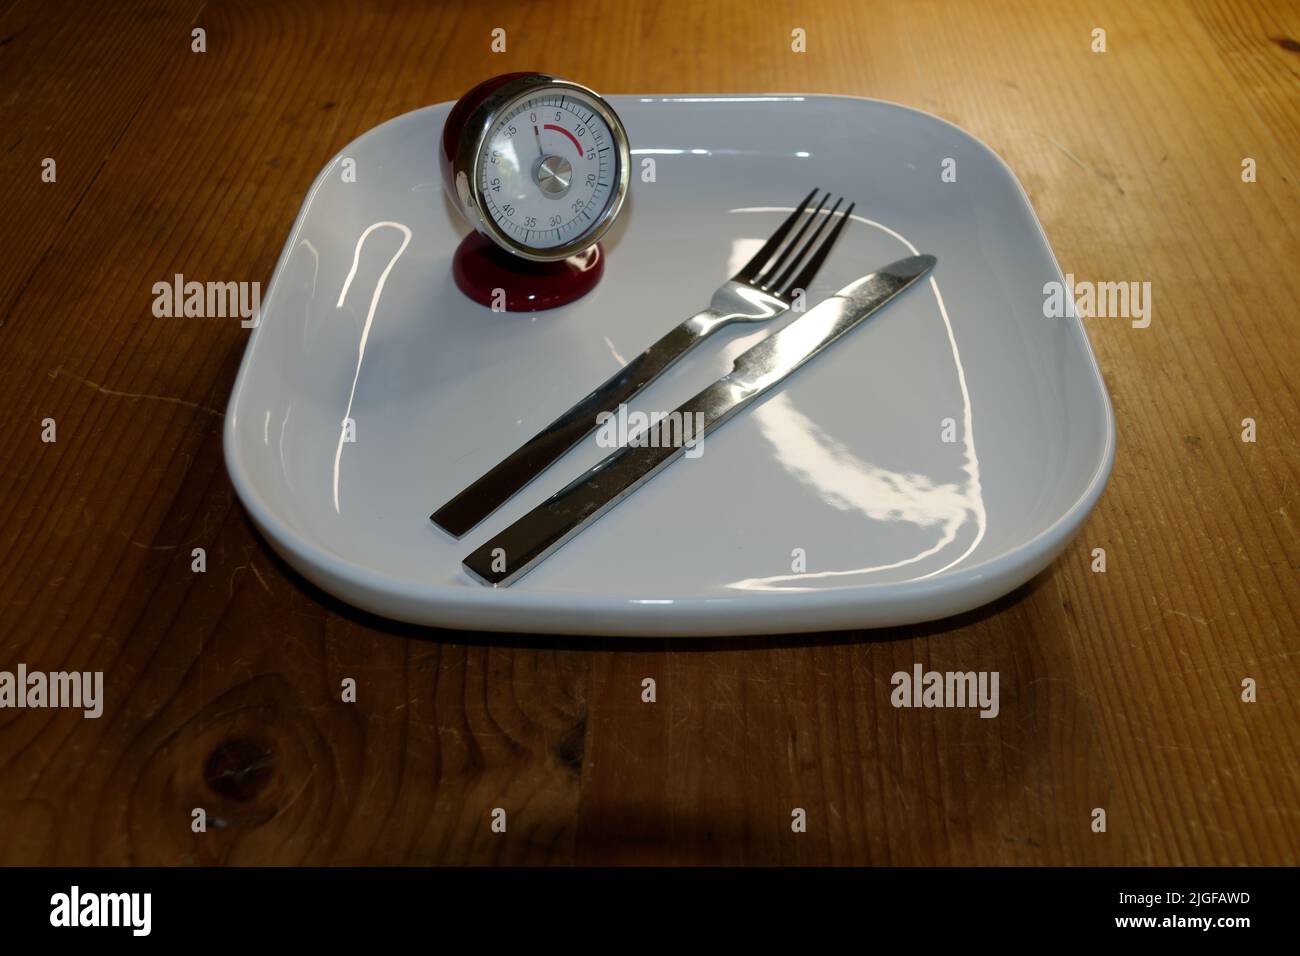 Immagine simbolica per il controllo della dieta e del peso, a digiuno a intervalli: Piastra vuota con cronometro e coltello e forchetta. Foto Stock